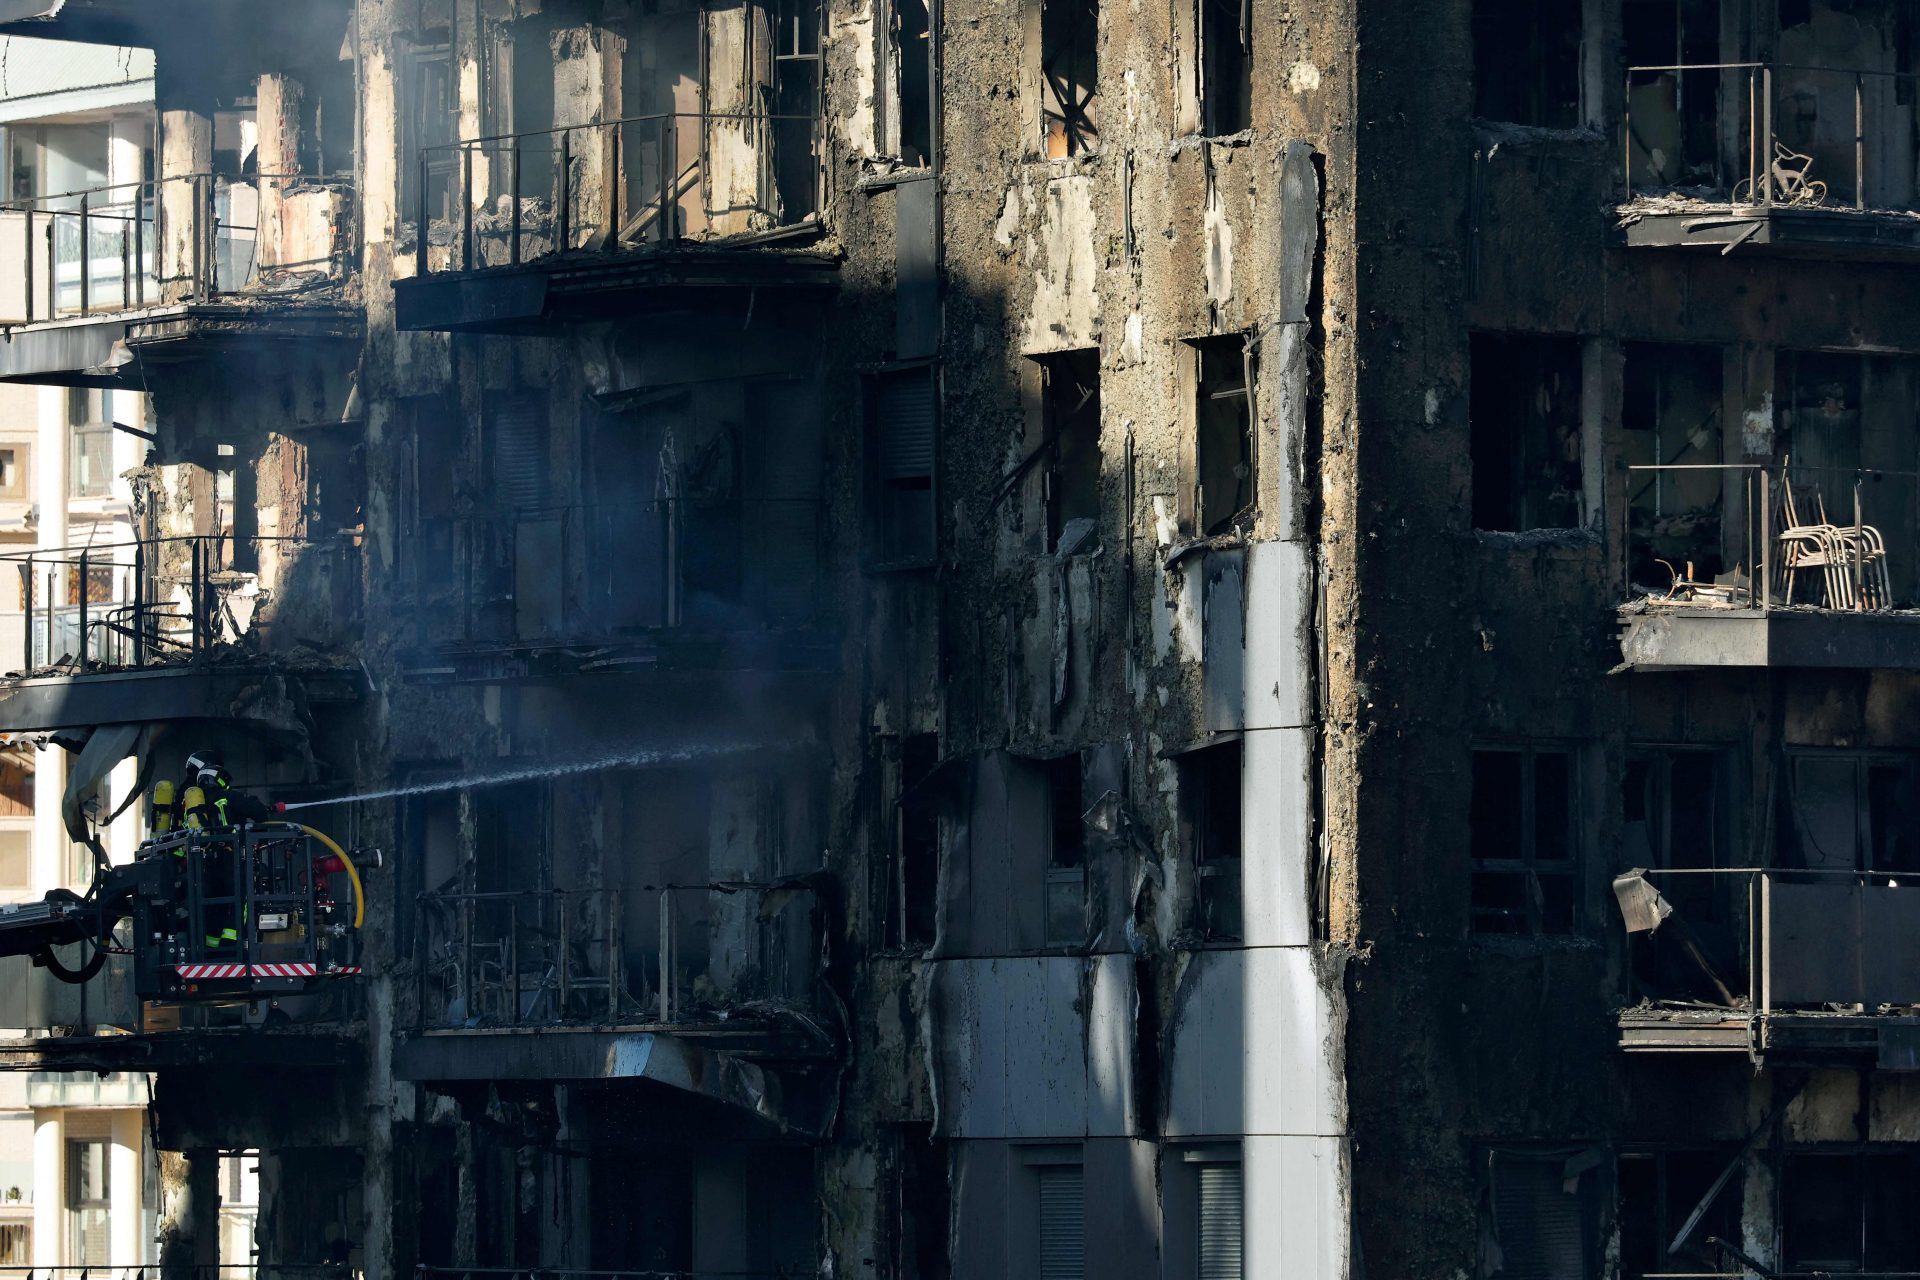 Eletrodoméstico estará na origem do incêndio em prédio que matou 10 pessoas em Valência